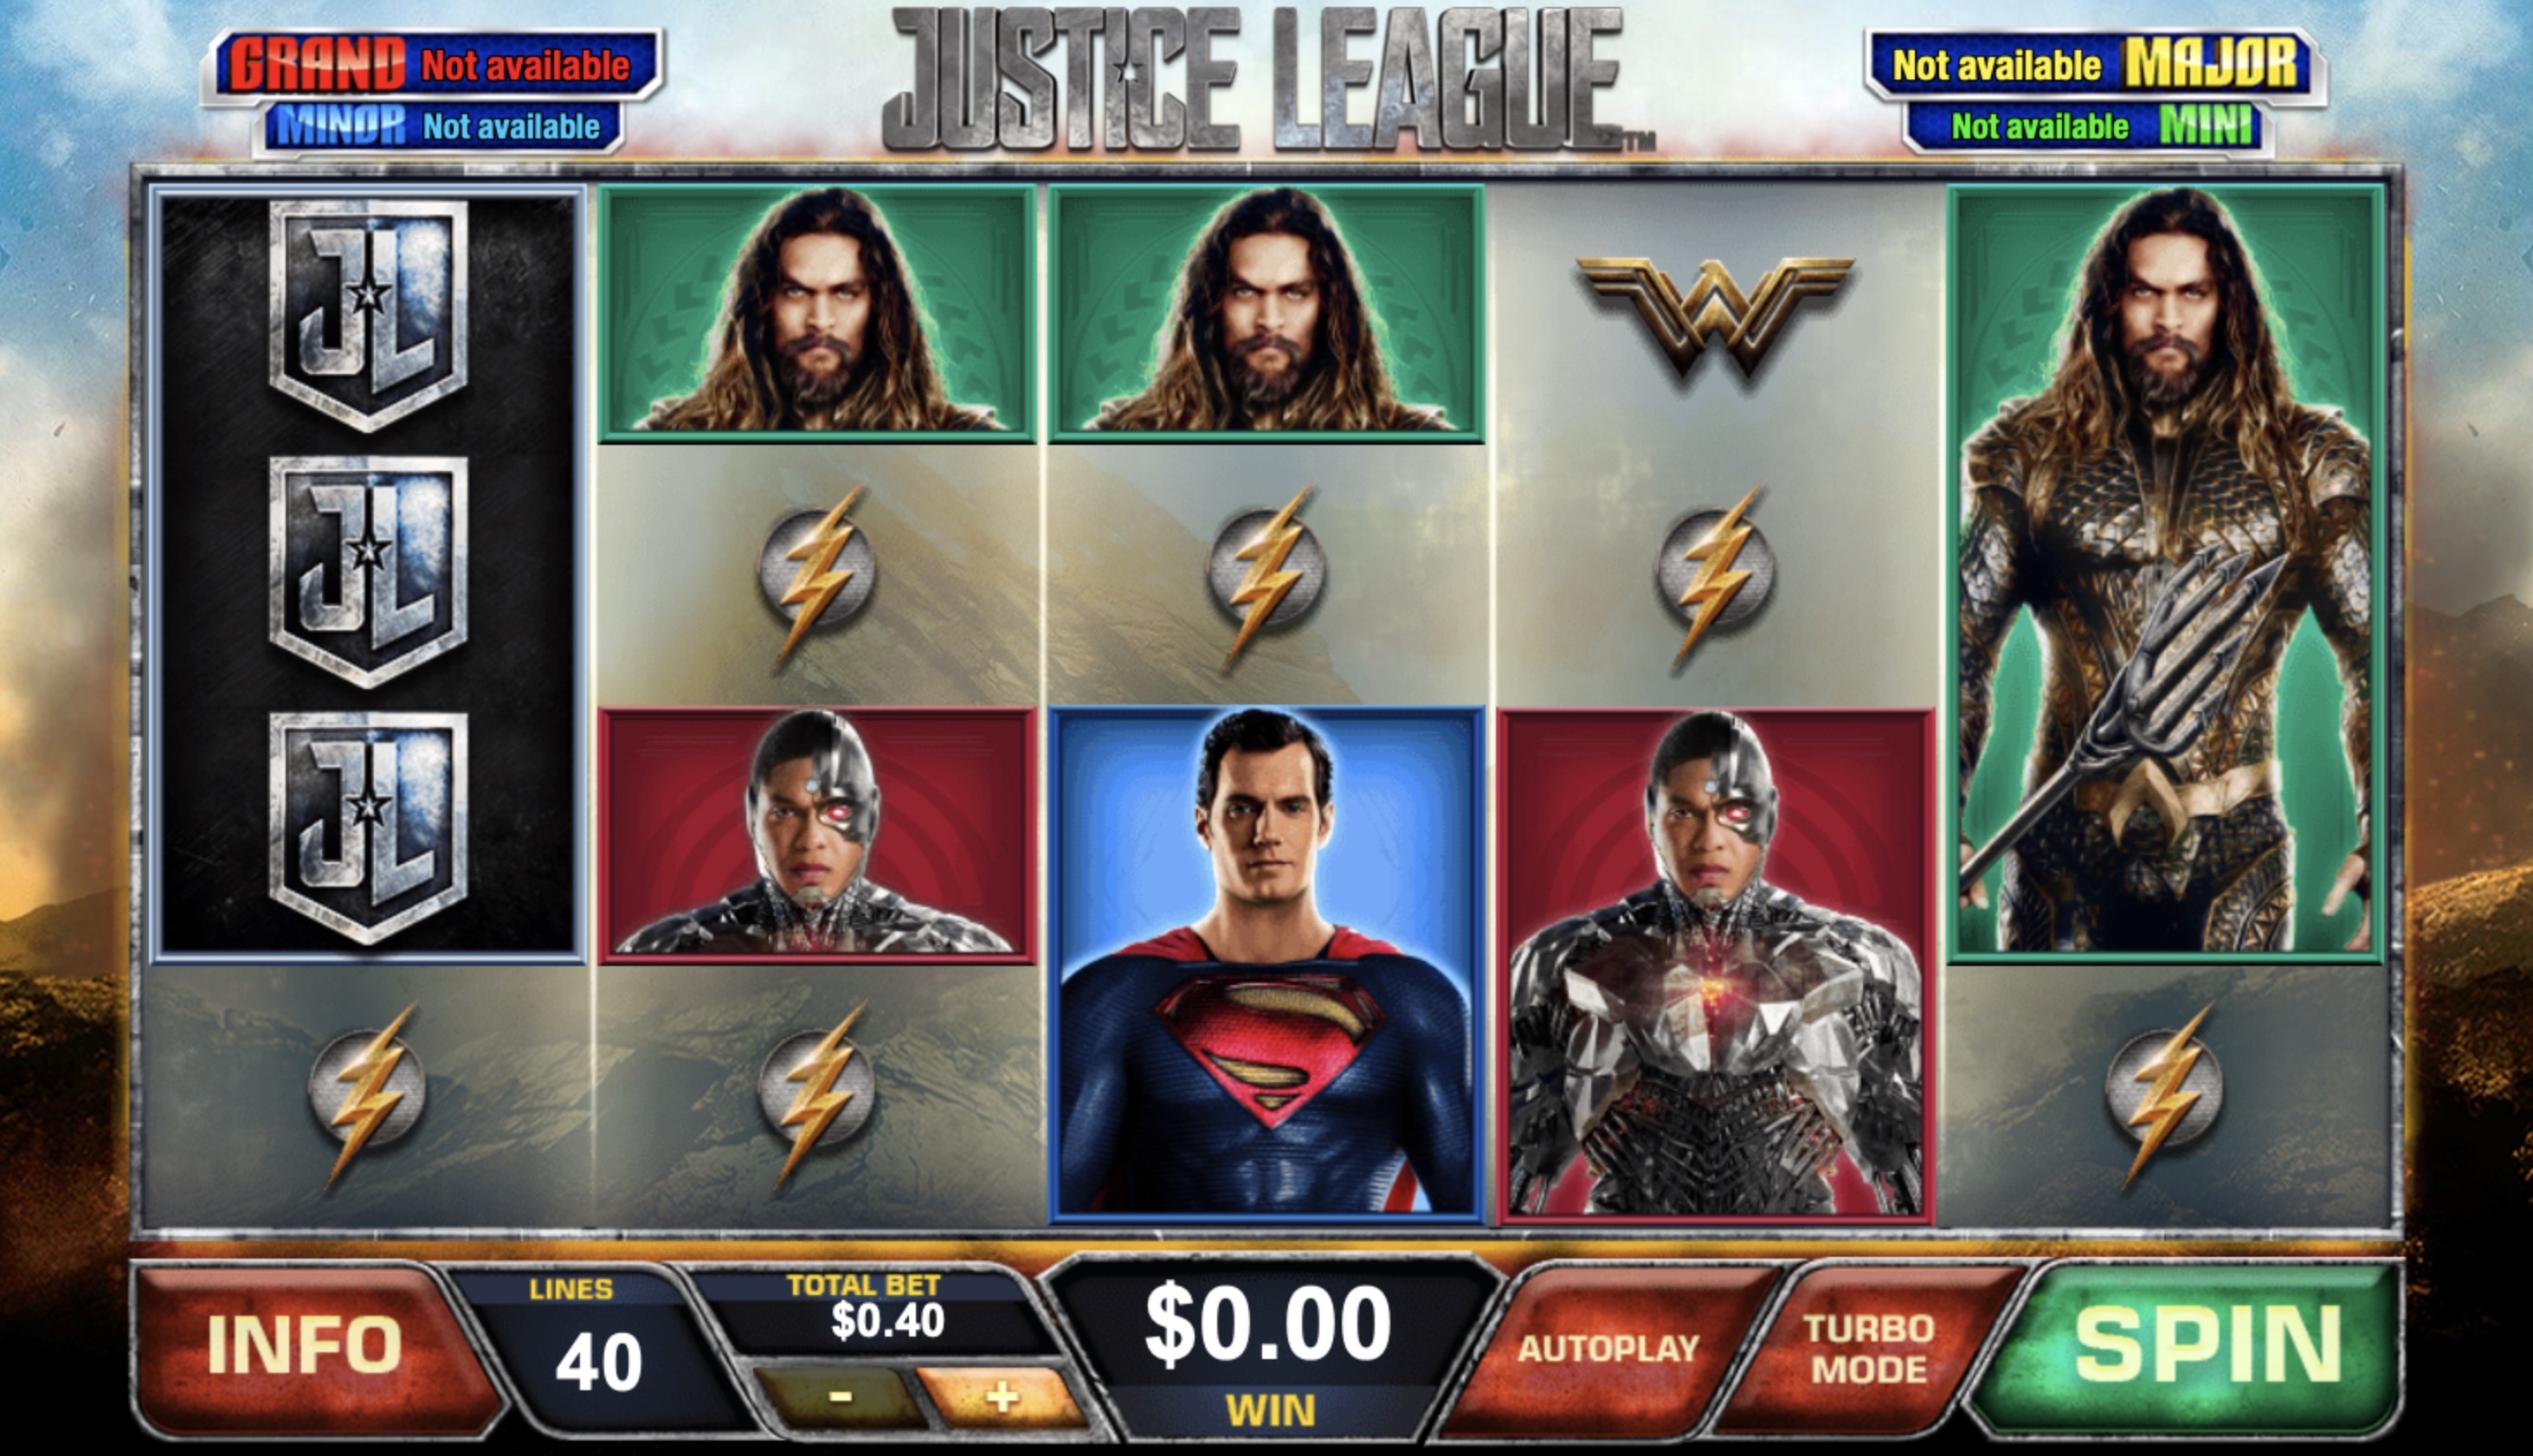 Видео-слоты «Justice League» на портале Казино Sol